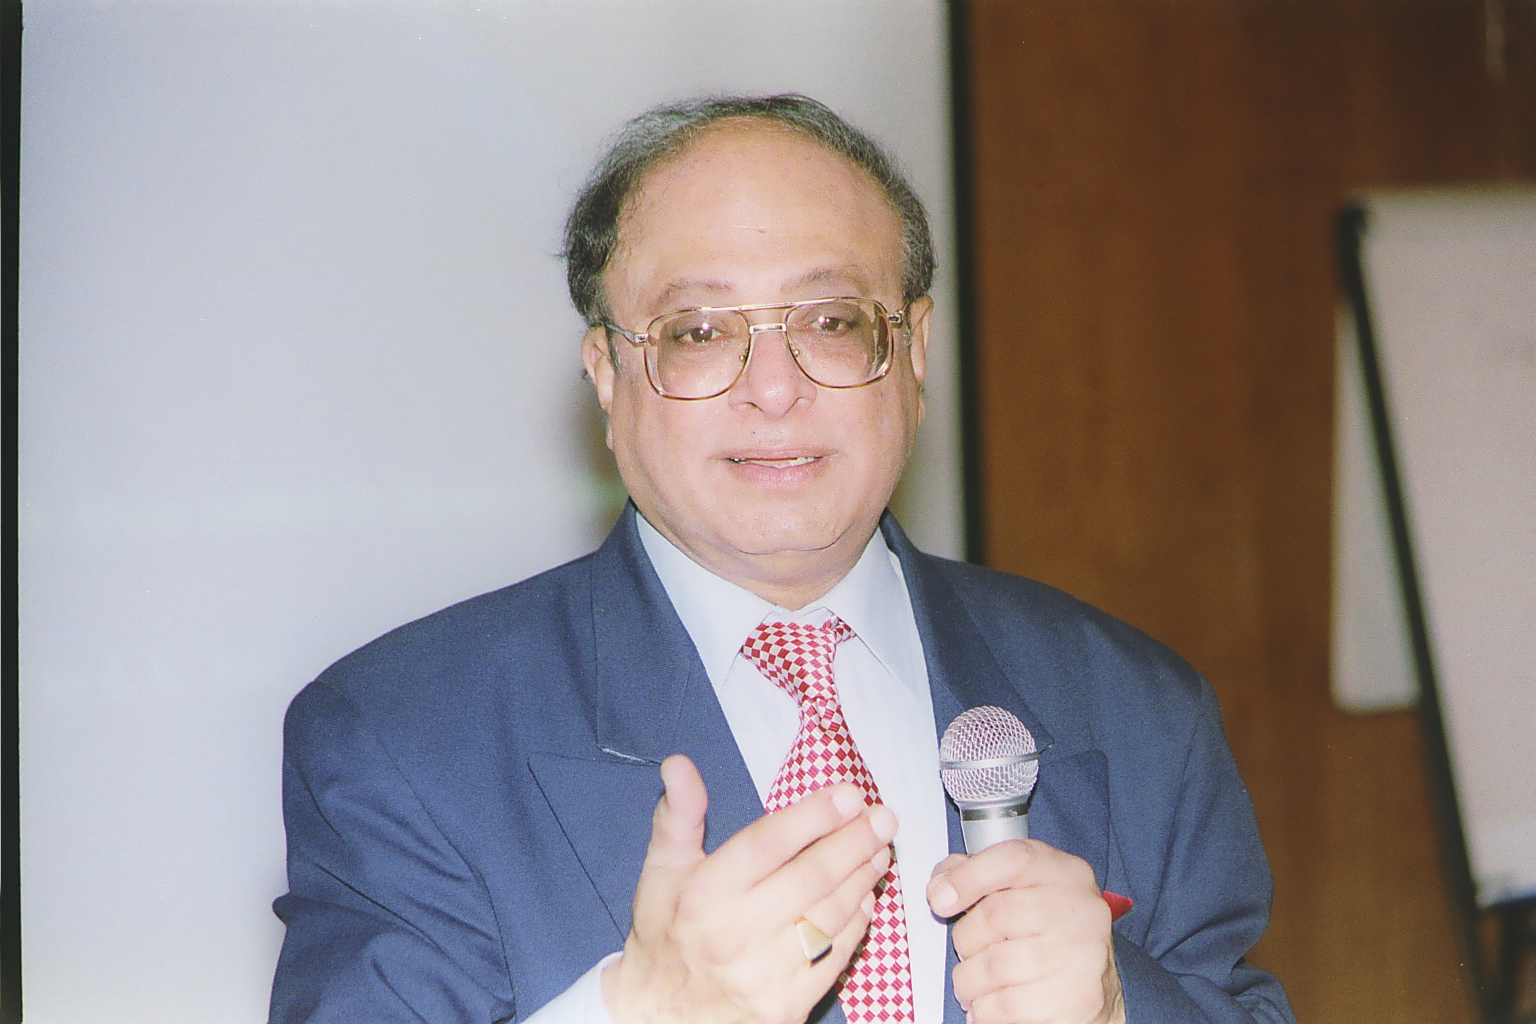 The Late Dr Karim Janmohamed giving at presentation at The IIS